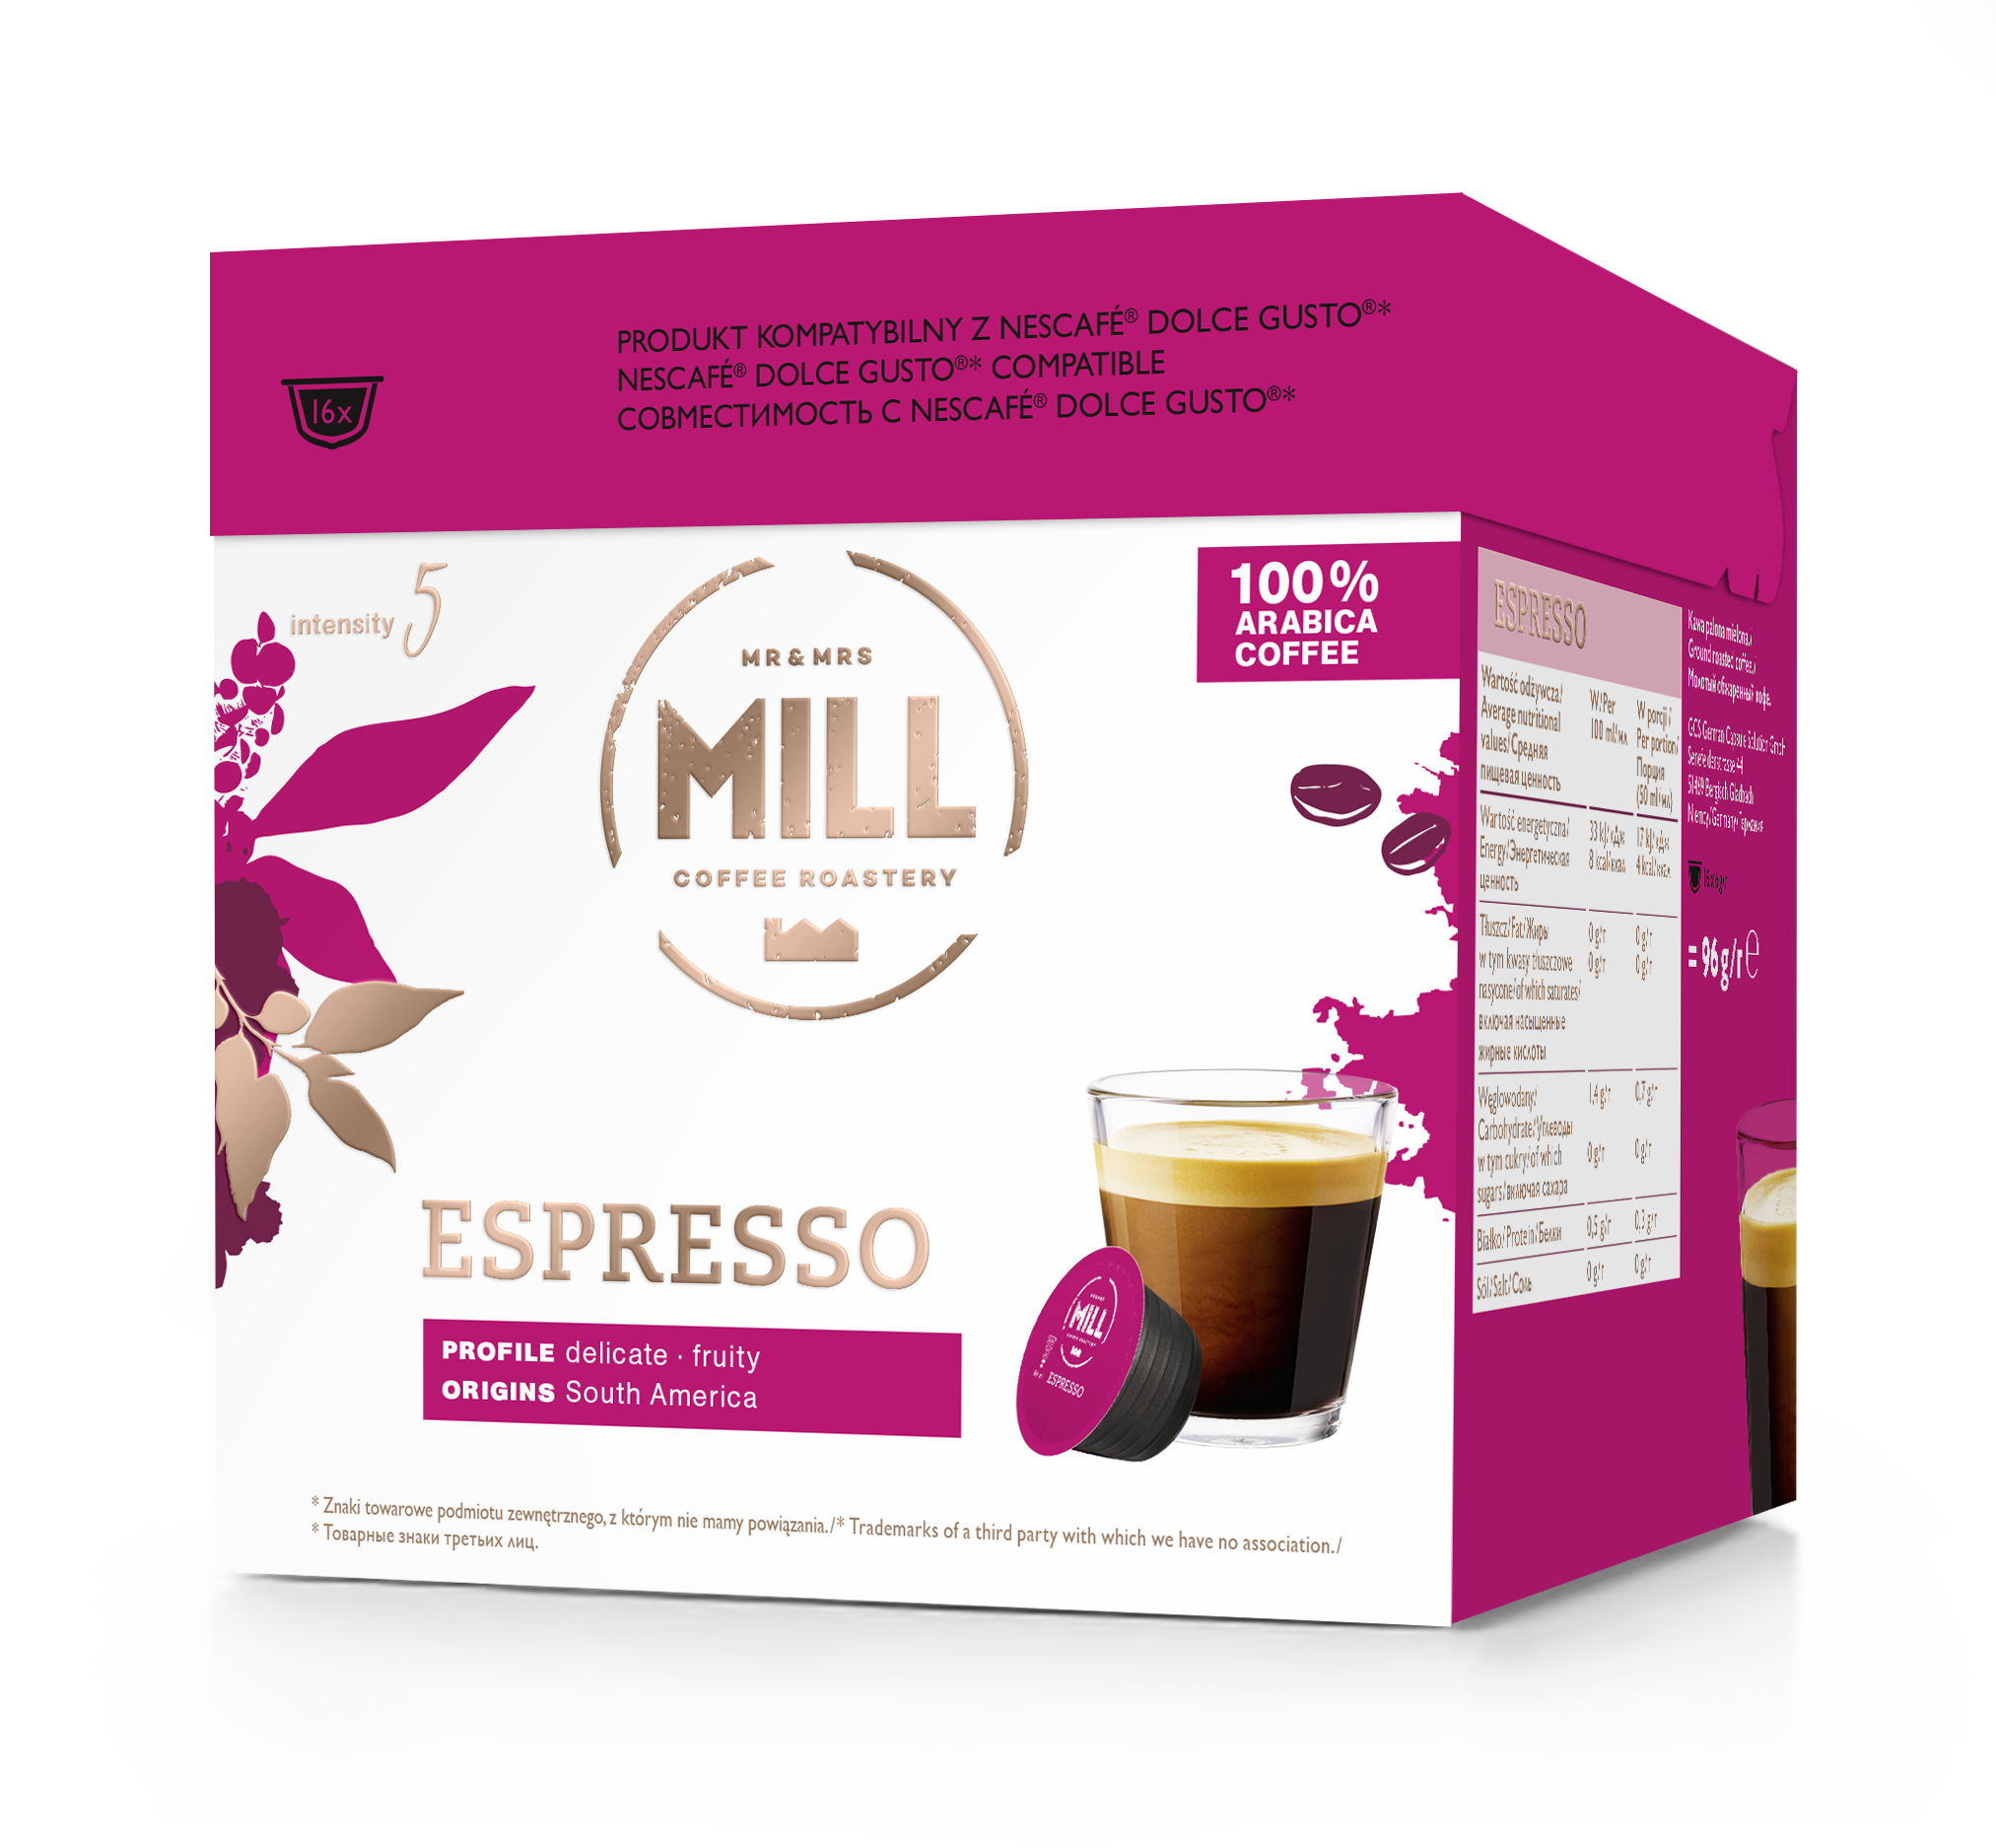 Las cápsulas Mr&Mrs Mill Espresso son compatibles con Dolce Gusto